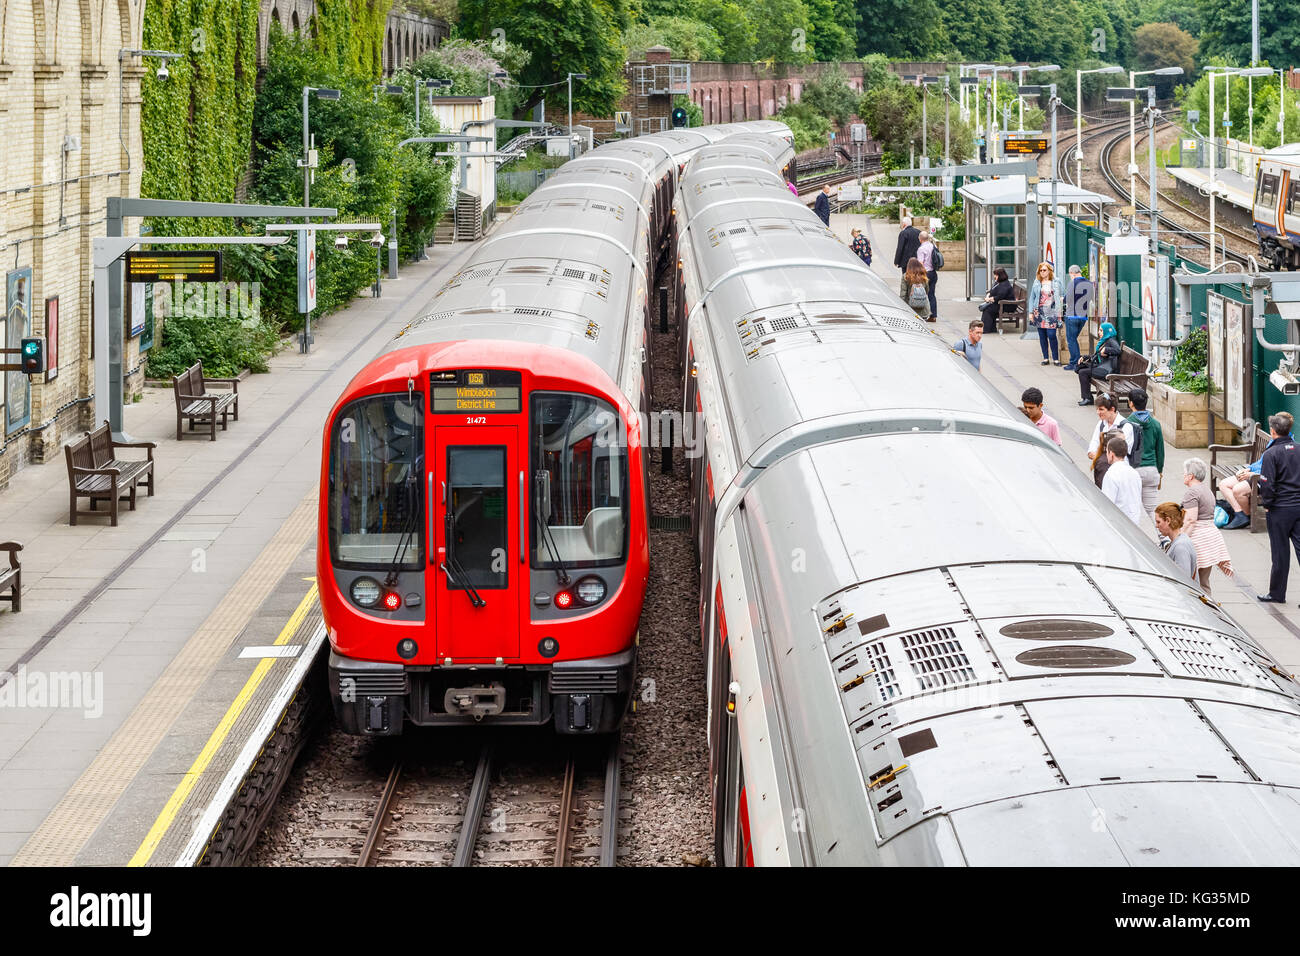 Londres, Royaume-Uni - Octobre 23, 2017 - La station de métro West Brompton, plates-formes avec les voyageurs à bord du train Banque D'Images